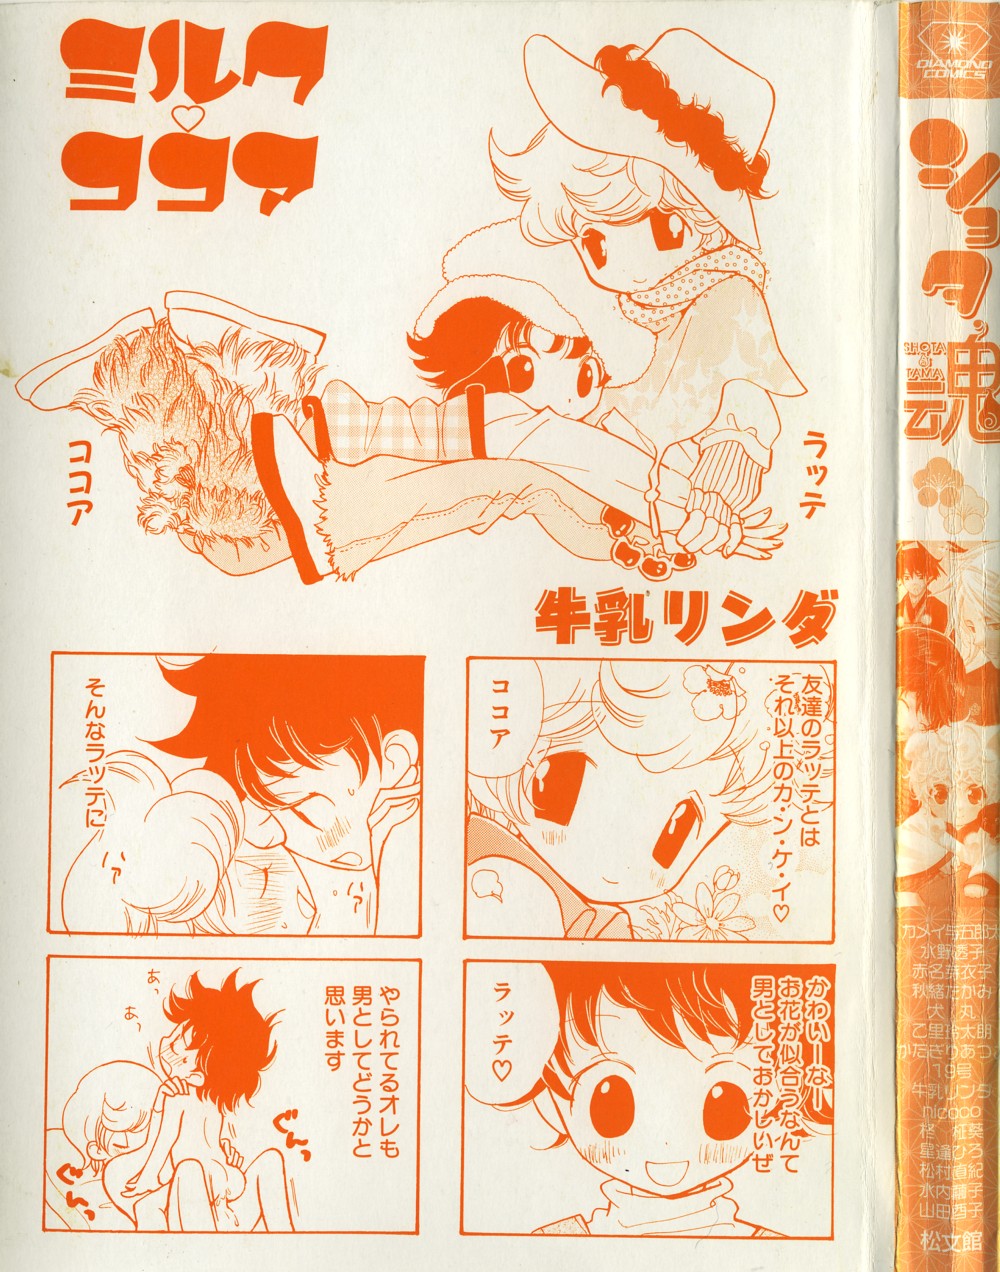 [Anthology] Shota Tama Vol. 1 page 3 full